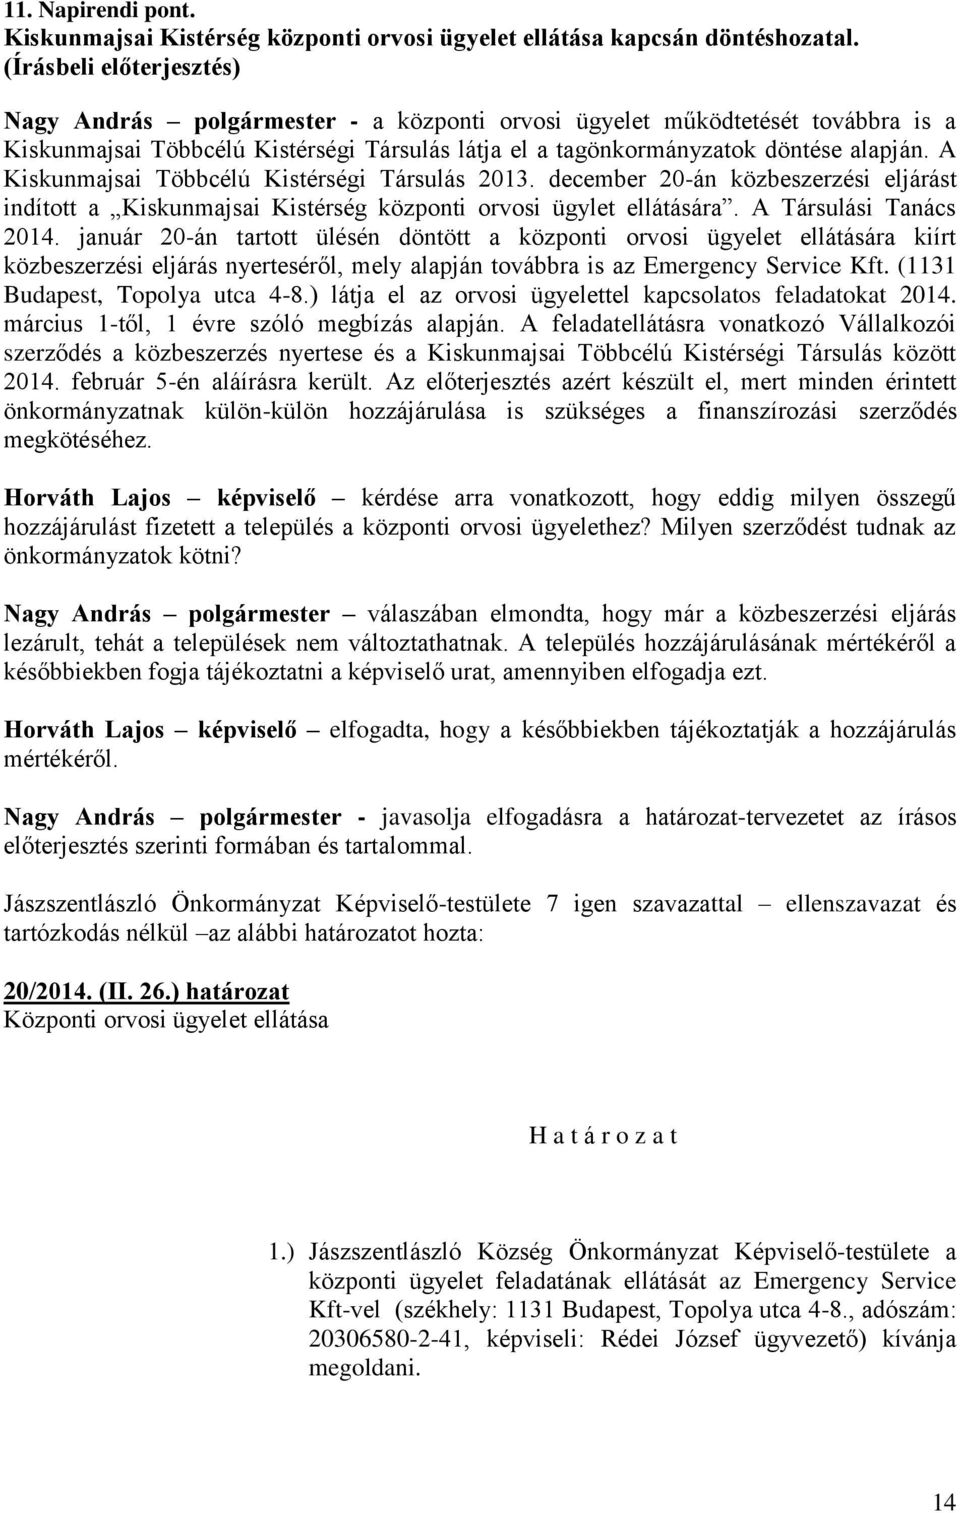 A Kiskunmajsai Többcélú Kistérségi Társulás 2013. december 20-án közbeszerzési eljárást indított a Kiskunmajsai Kistérség központi orvosi ügylet ellátására. A Társulási Tanács 2014.